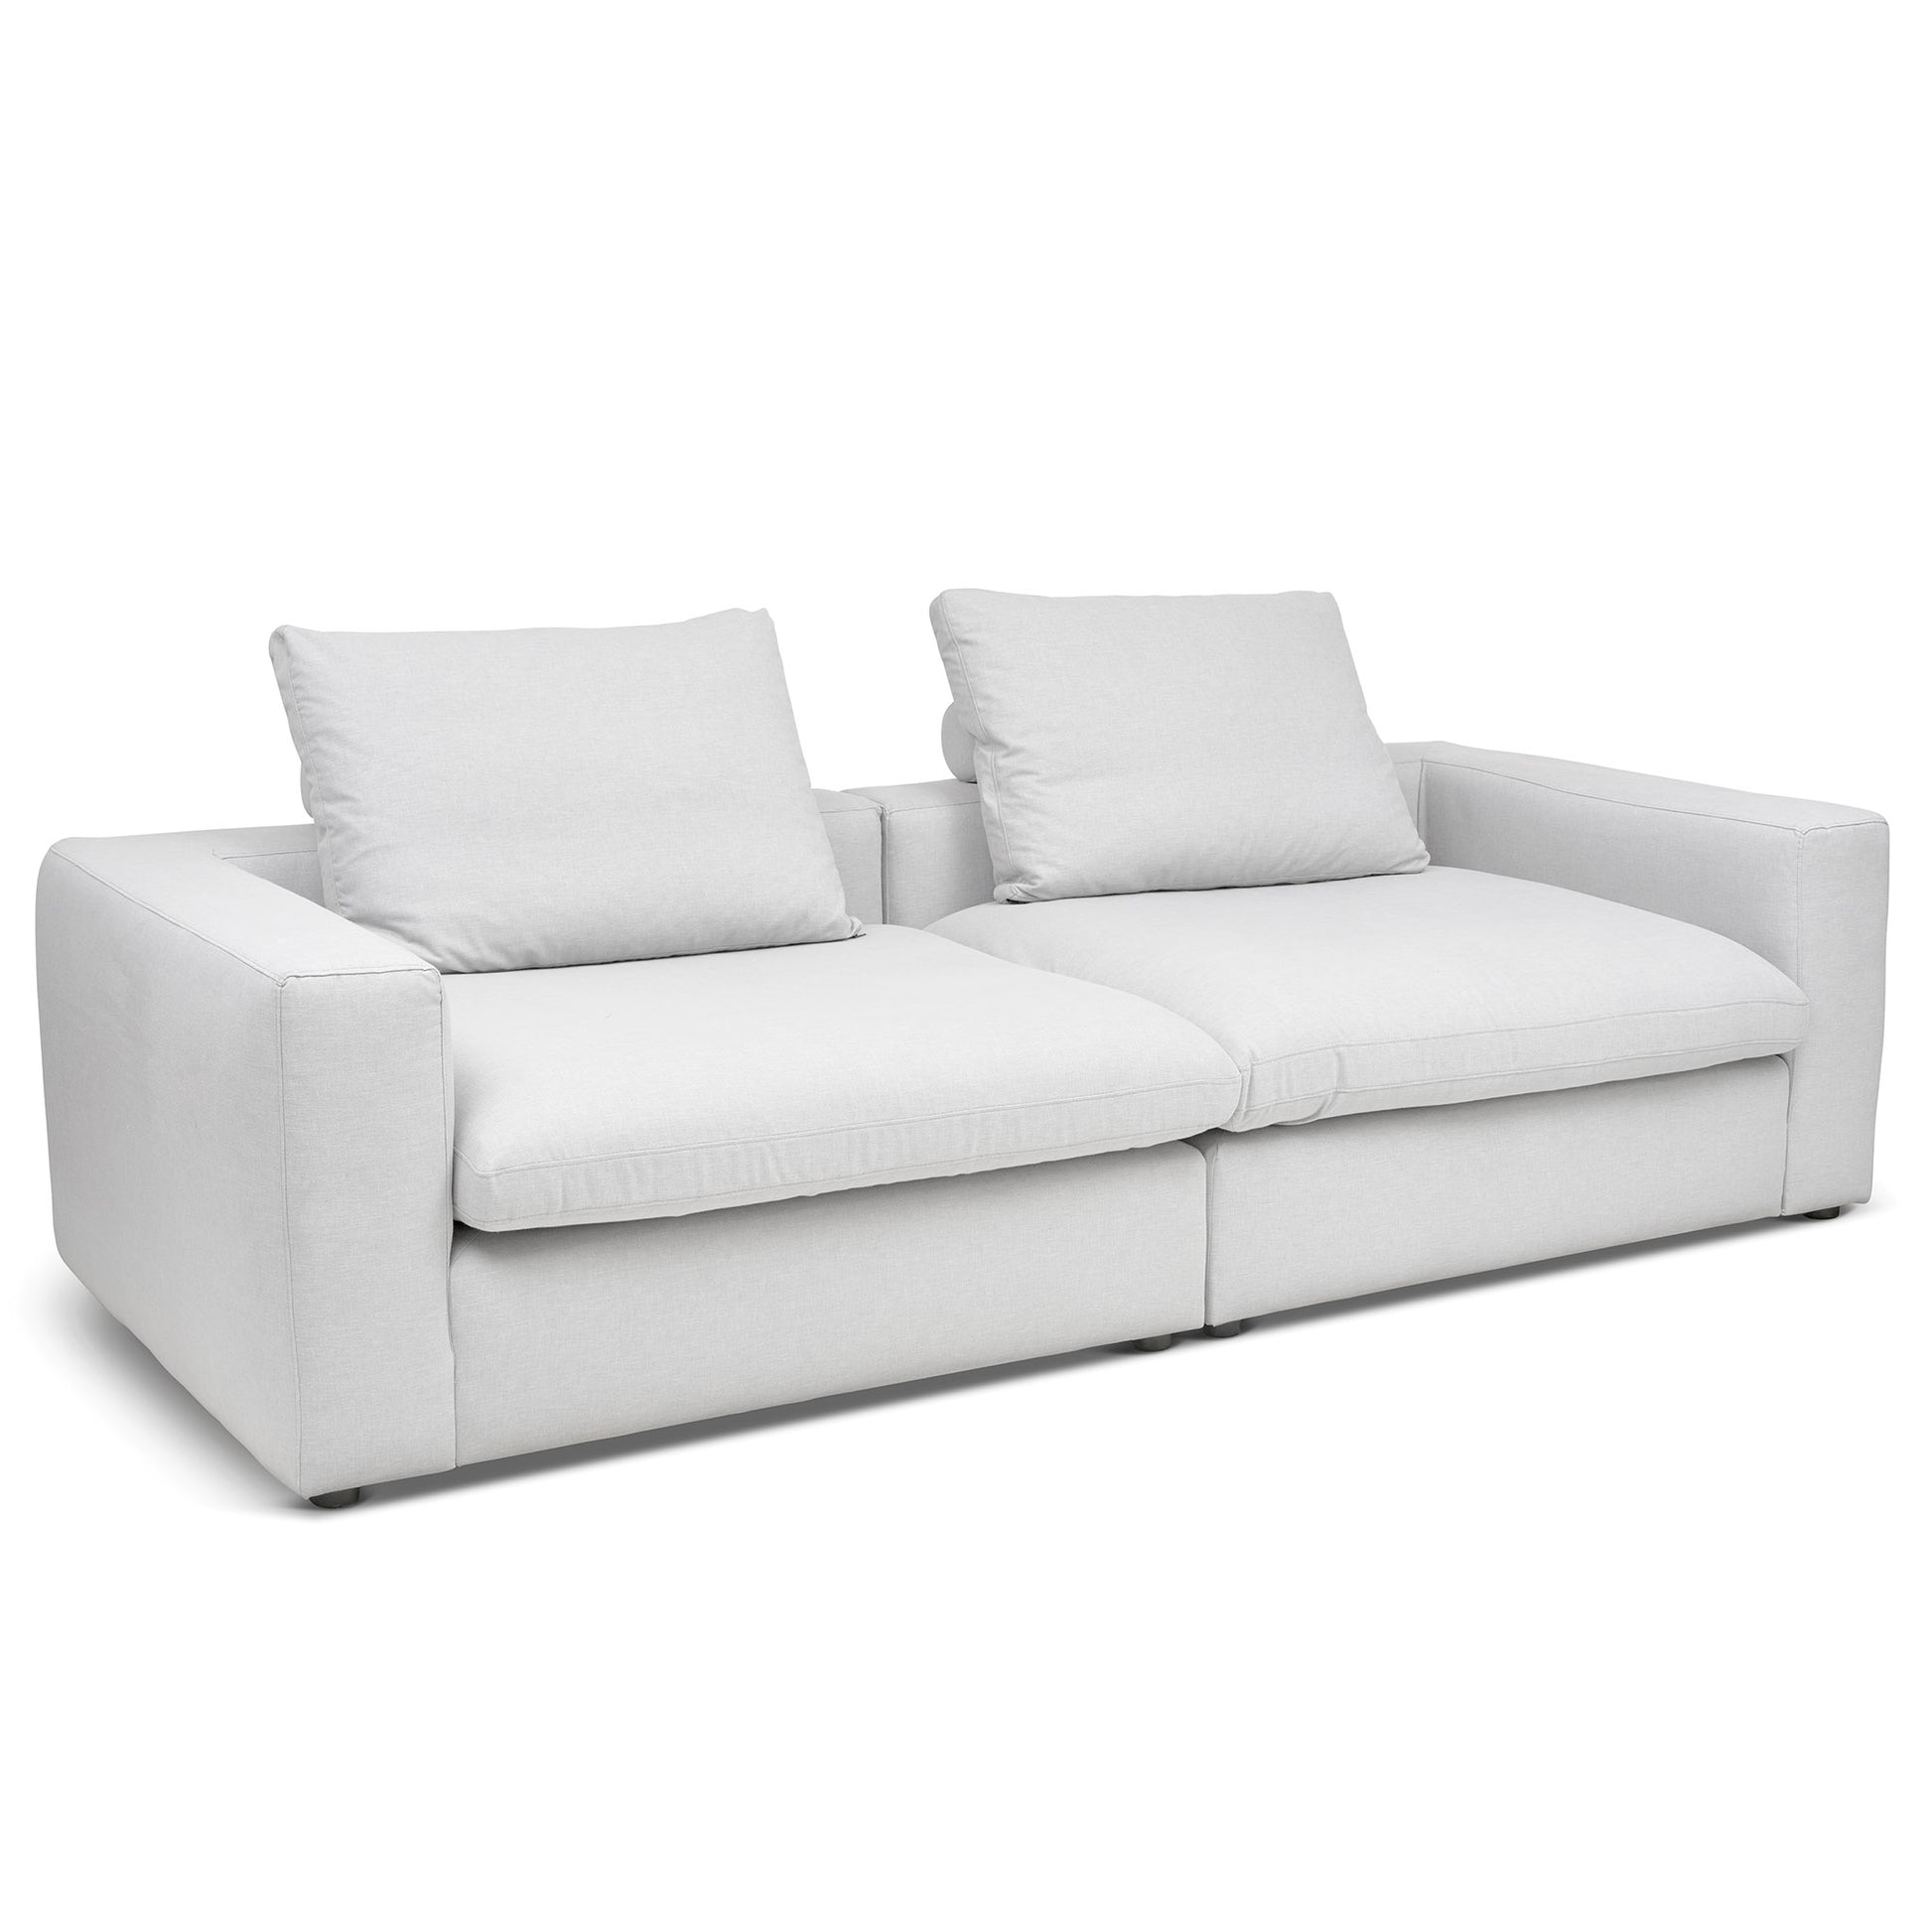 Extra djup 4-sits soffa i kritvit färg. Palazzo är en byggbar modulsoffa